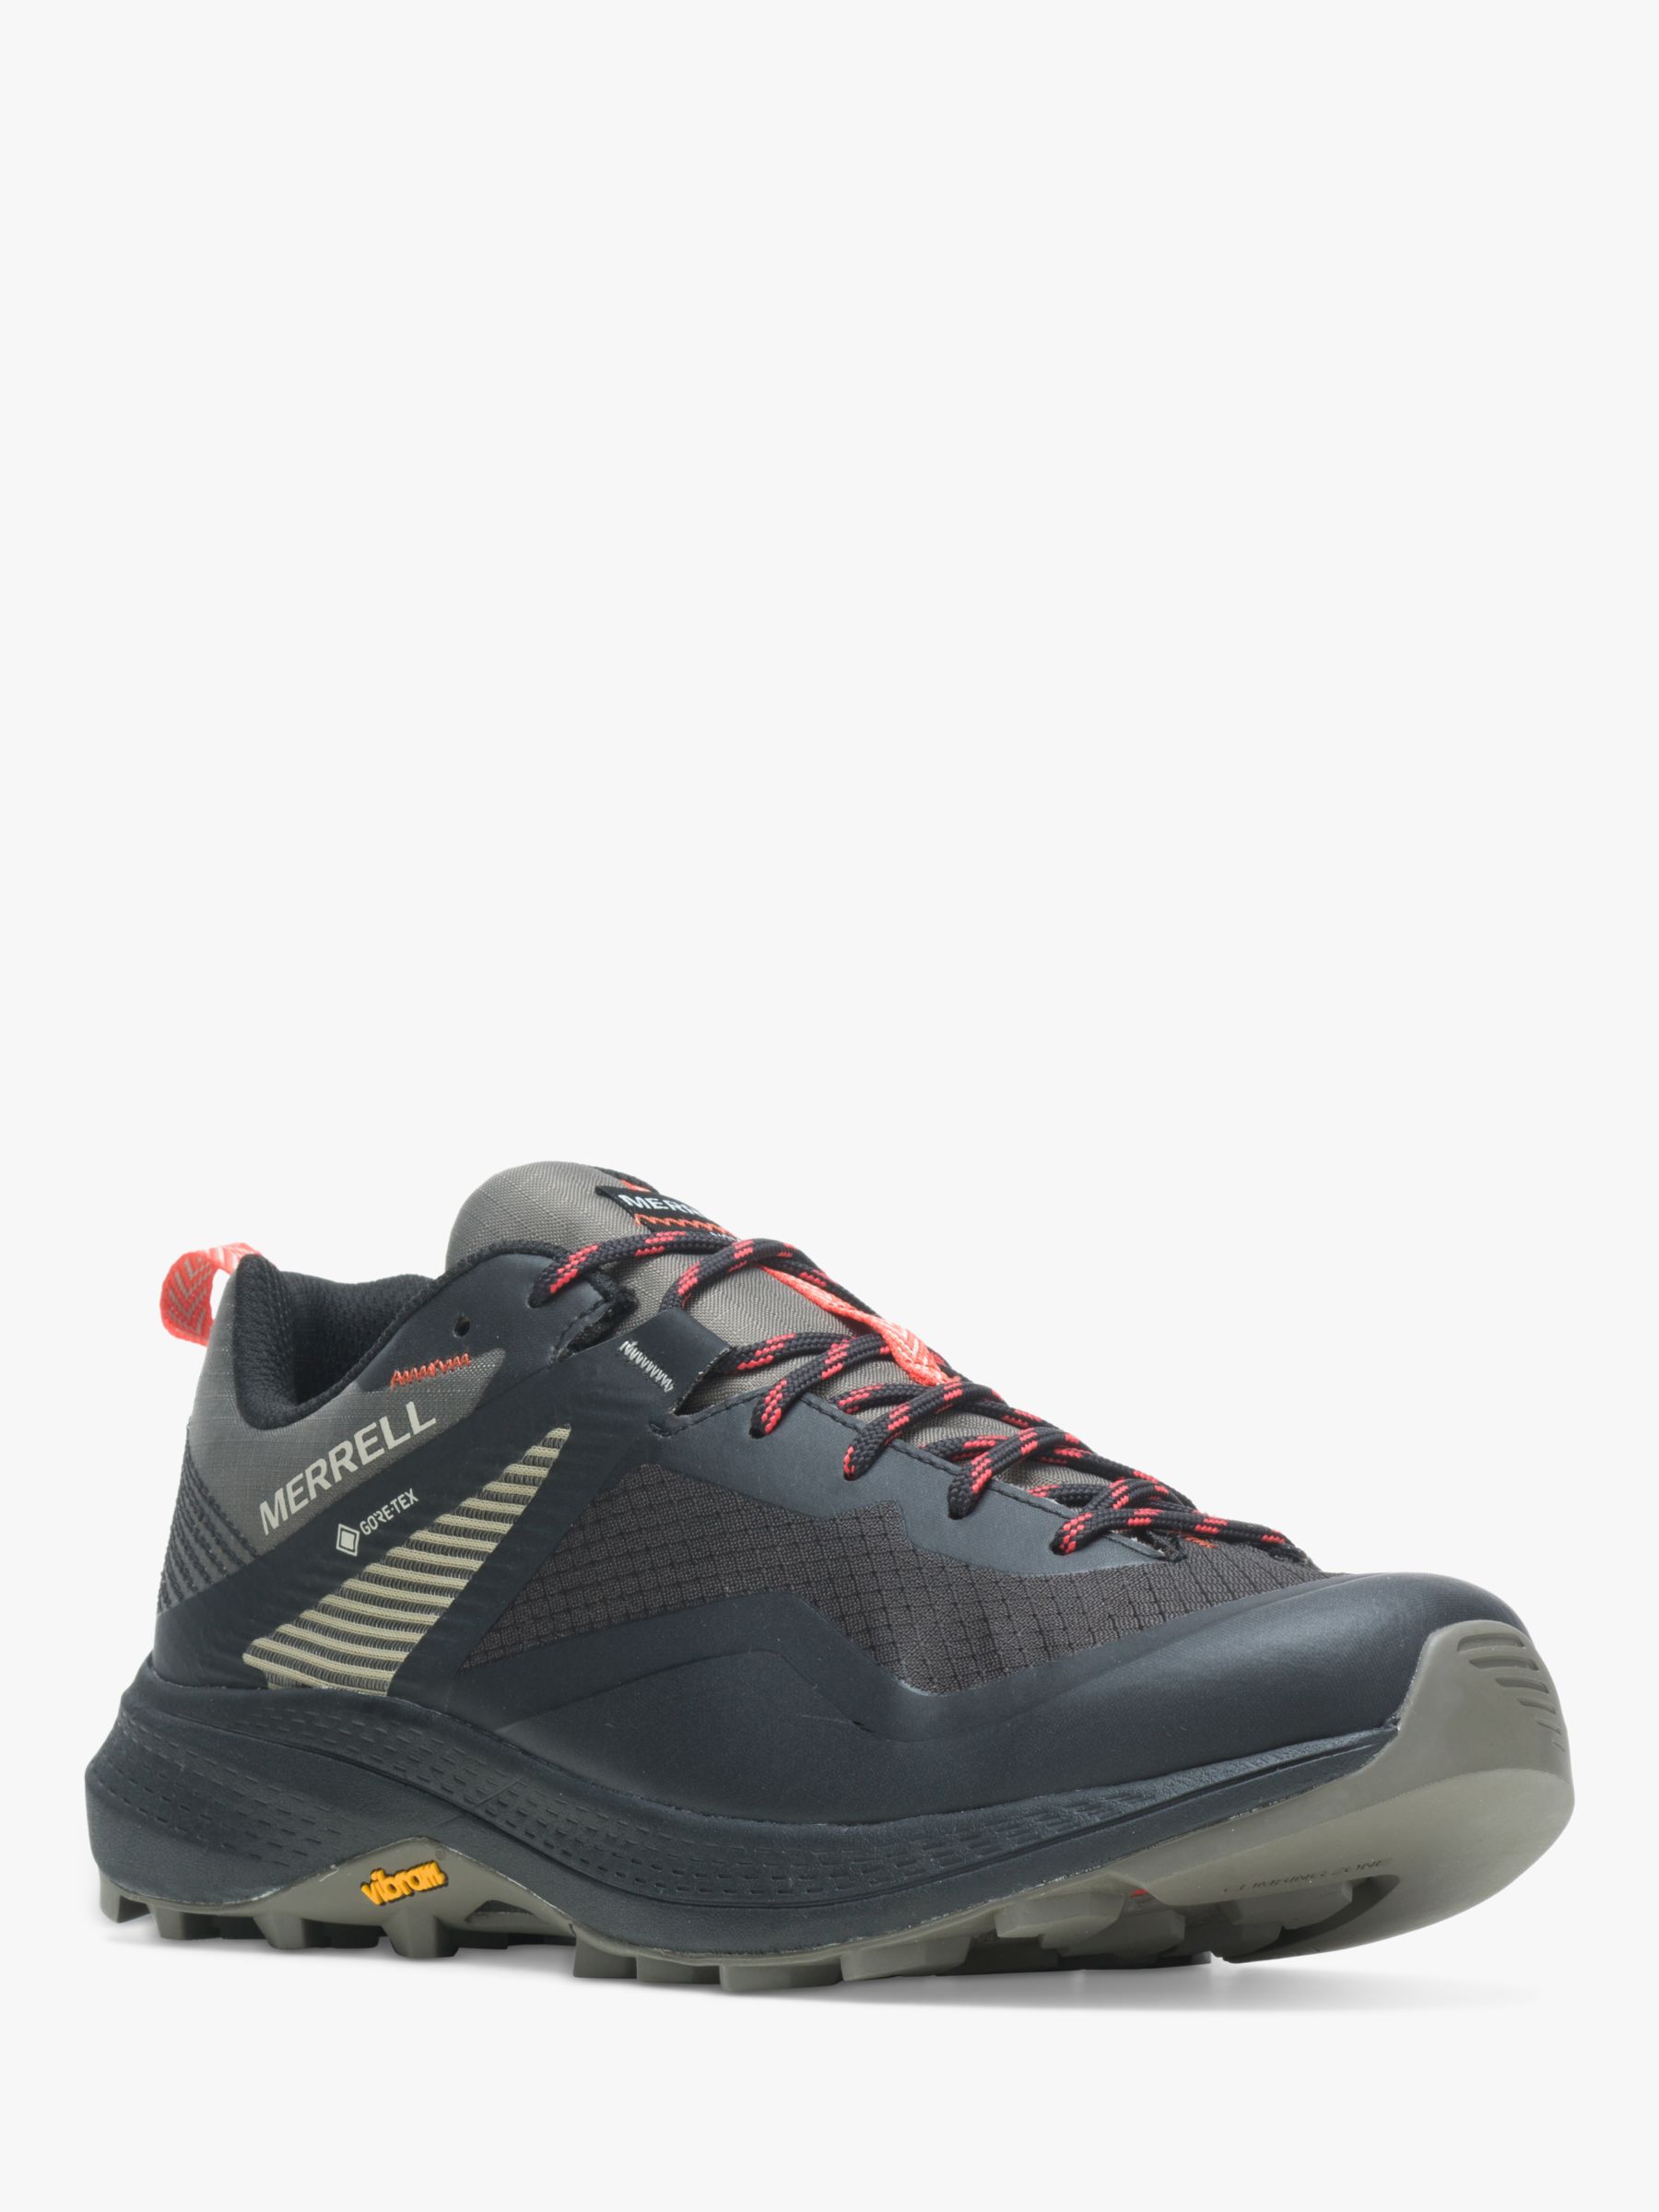 Merrell MQM 3 Men's Waterproof Gore-Tex Walking Shoes, Grey, 11